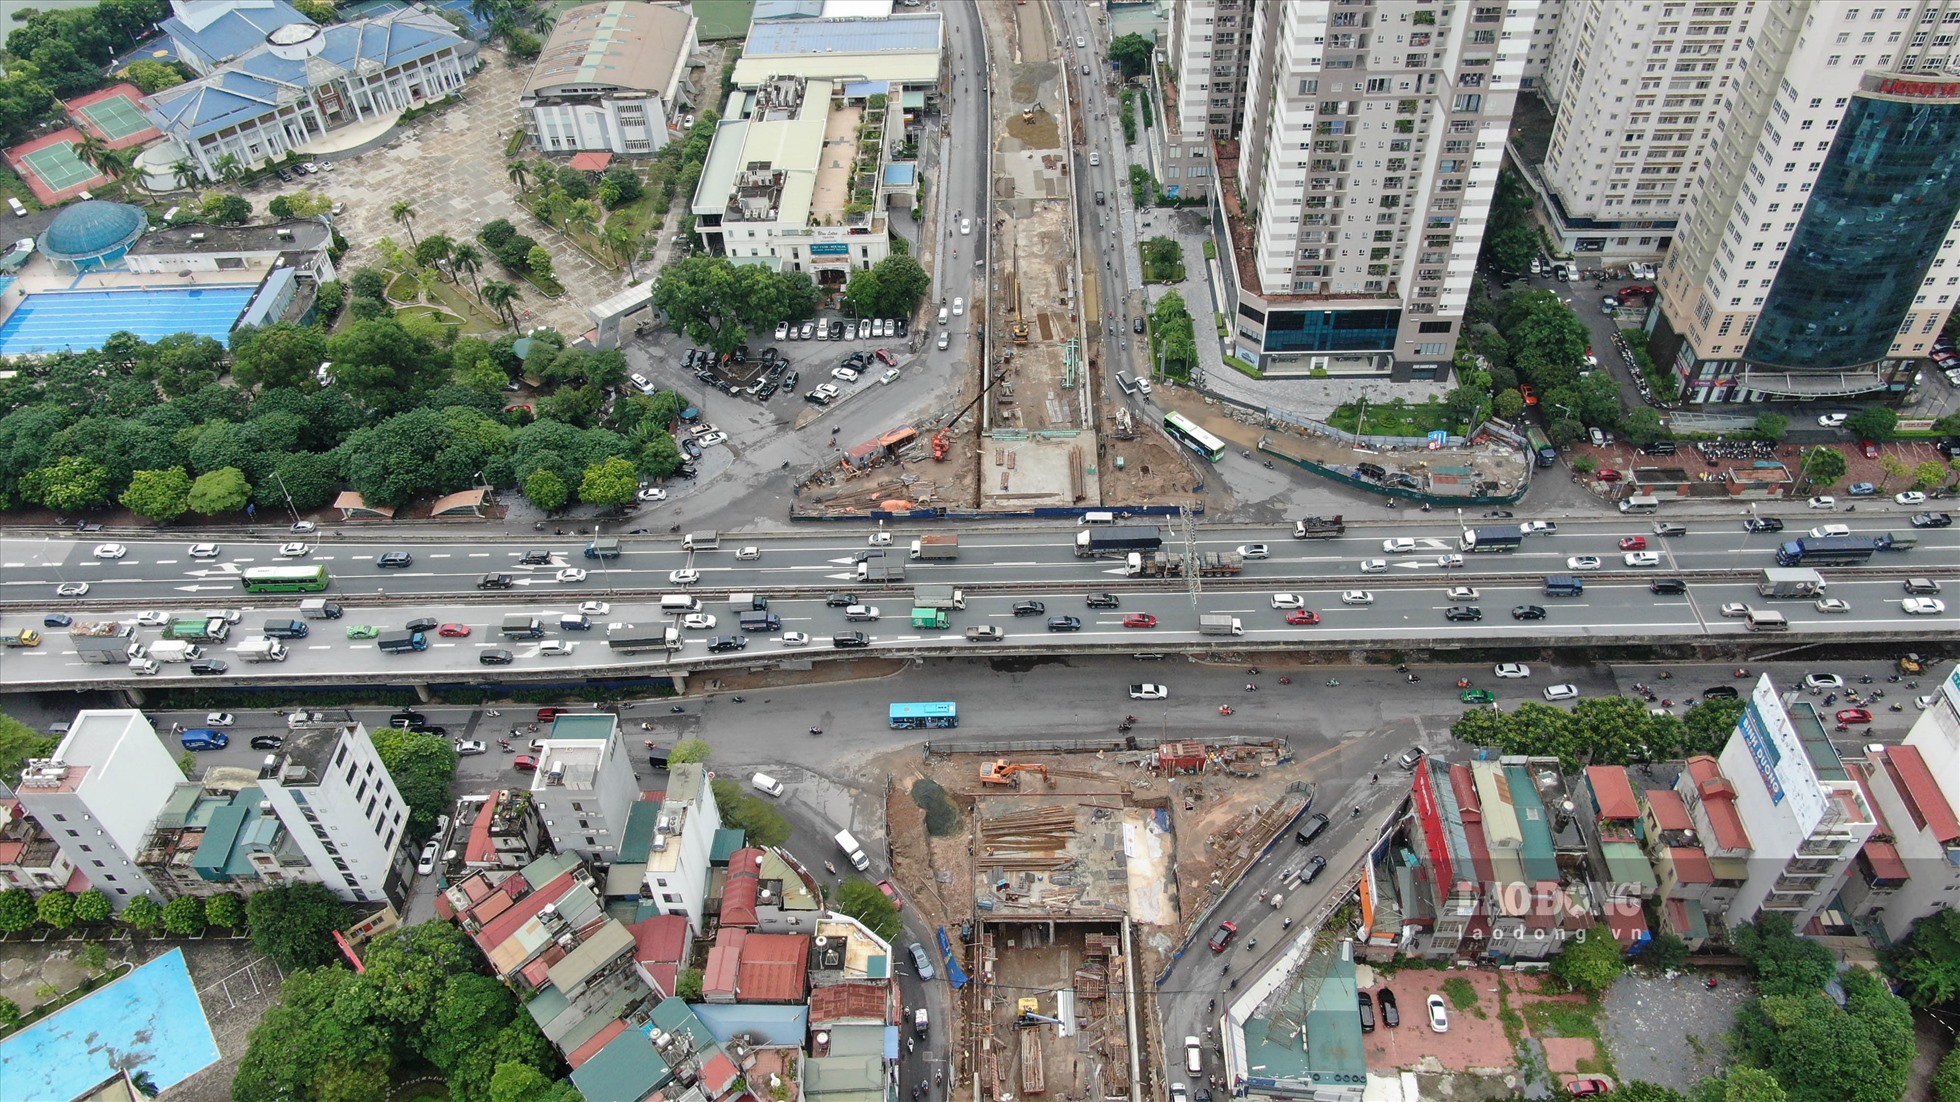 Công trình được kỳ vọng sẽ giải quyết xung đột, ùn tắc tại nút giao Lê Văn Lương - Vành đai 3 và từng bước hoàn chỉnh hạ tầng giao thông Thủ đô.